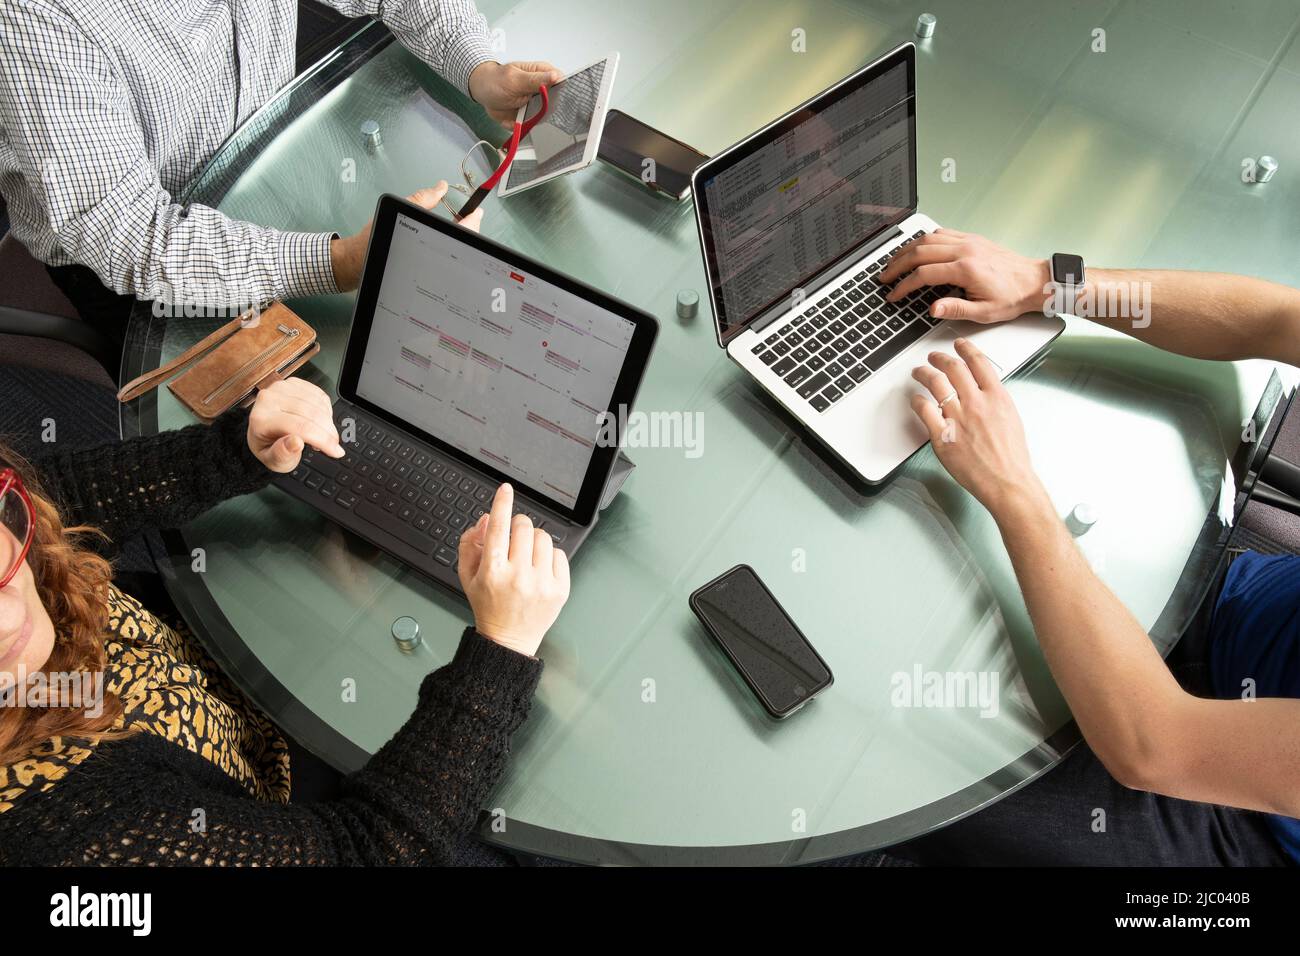 Aufnahme von drei Personen, die an Computern und Tablets arbeiten. Stockfoto